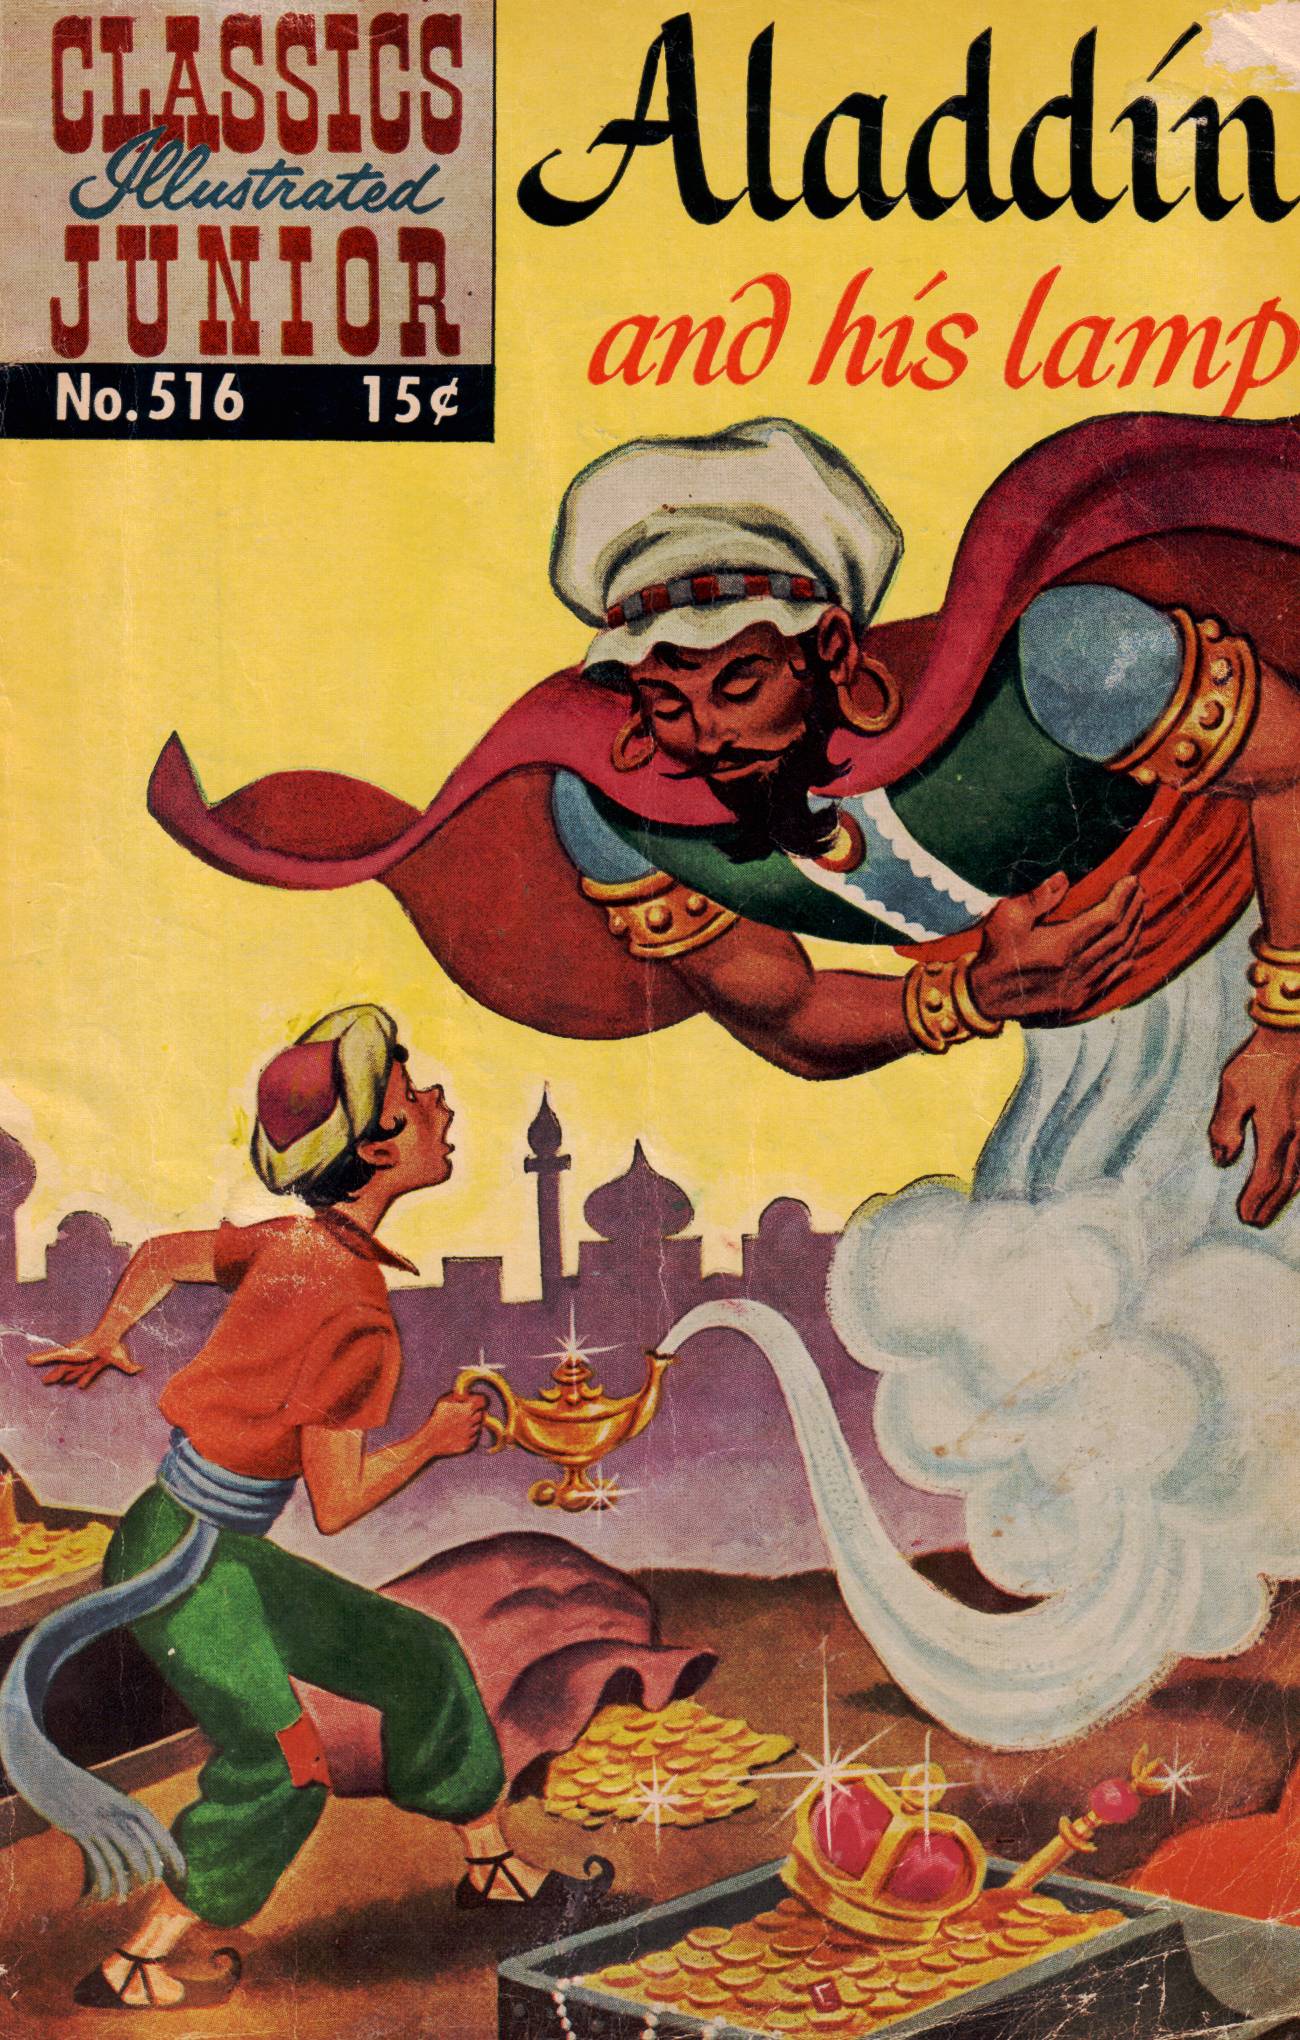 Read online Classics Illustrated Junior comic -  Issue #516 - 1